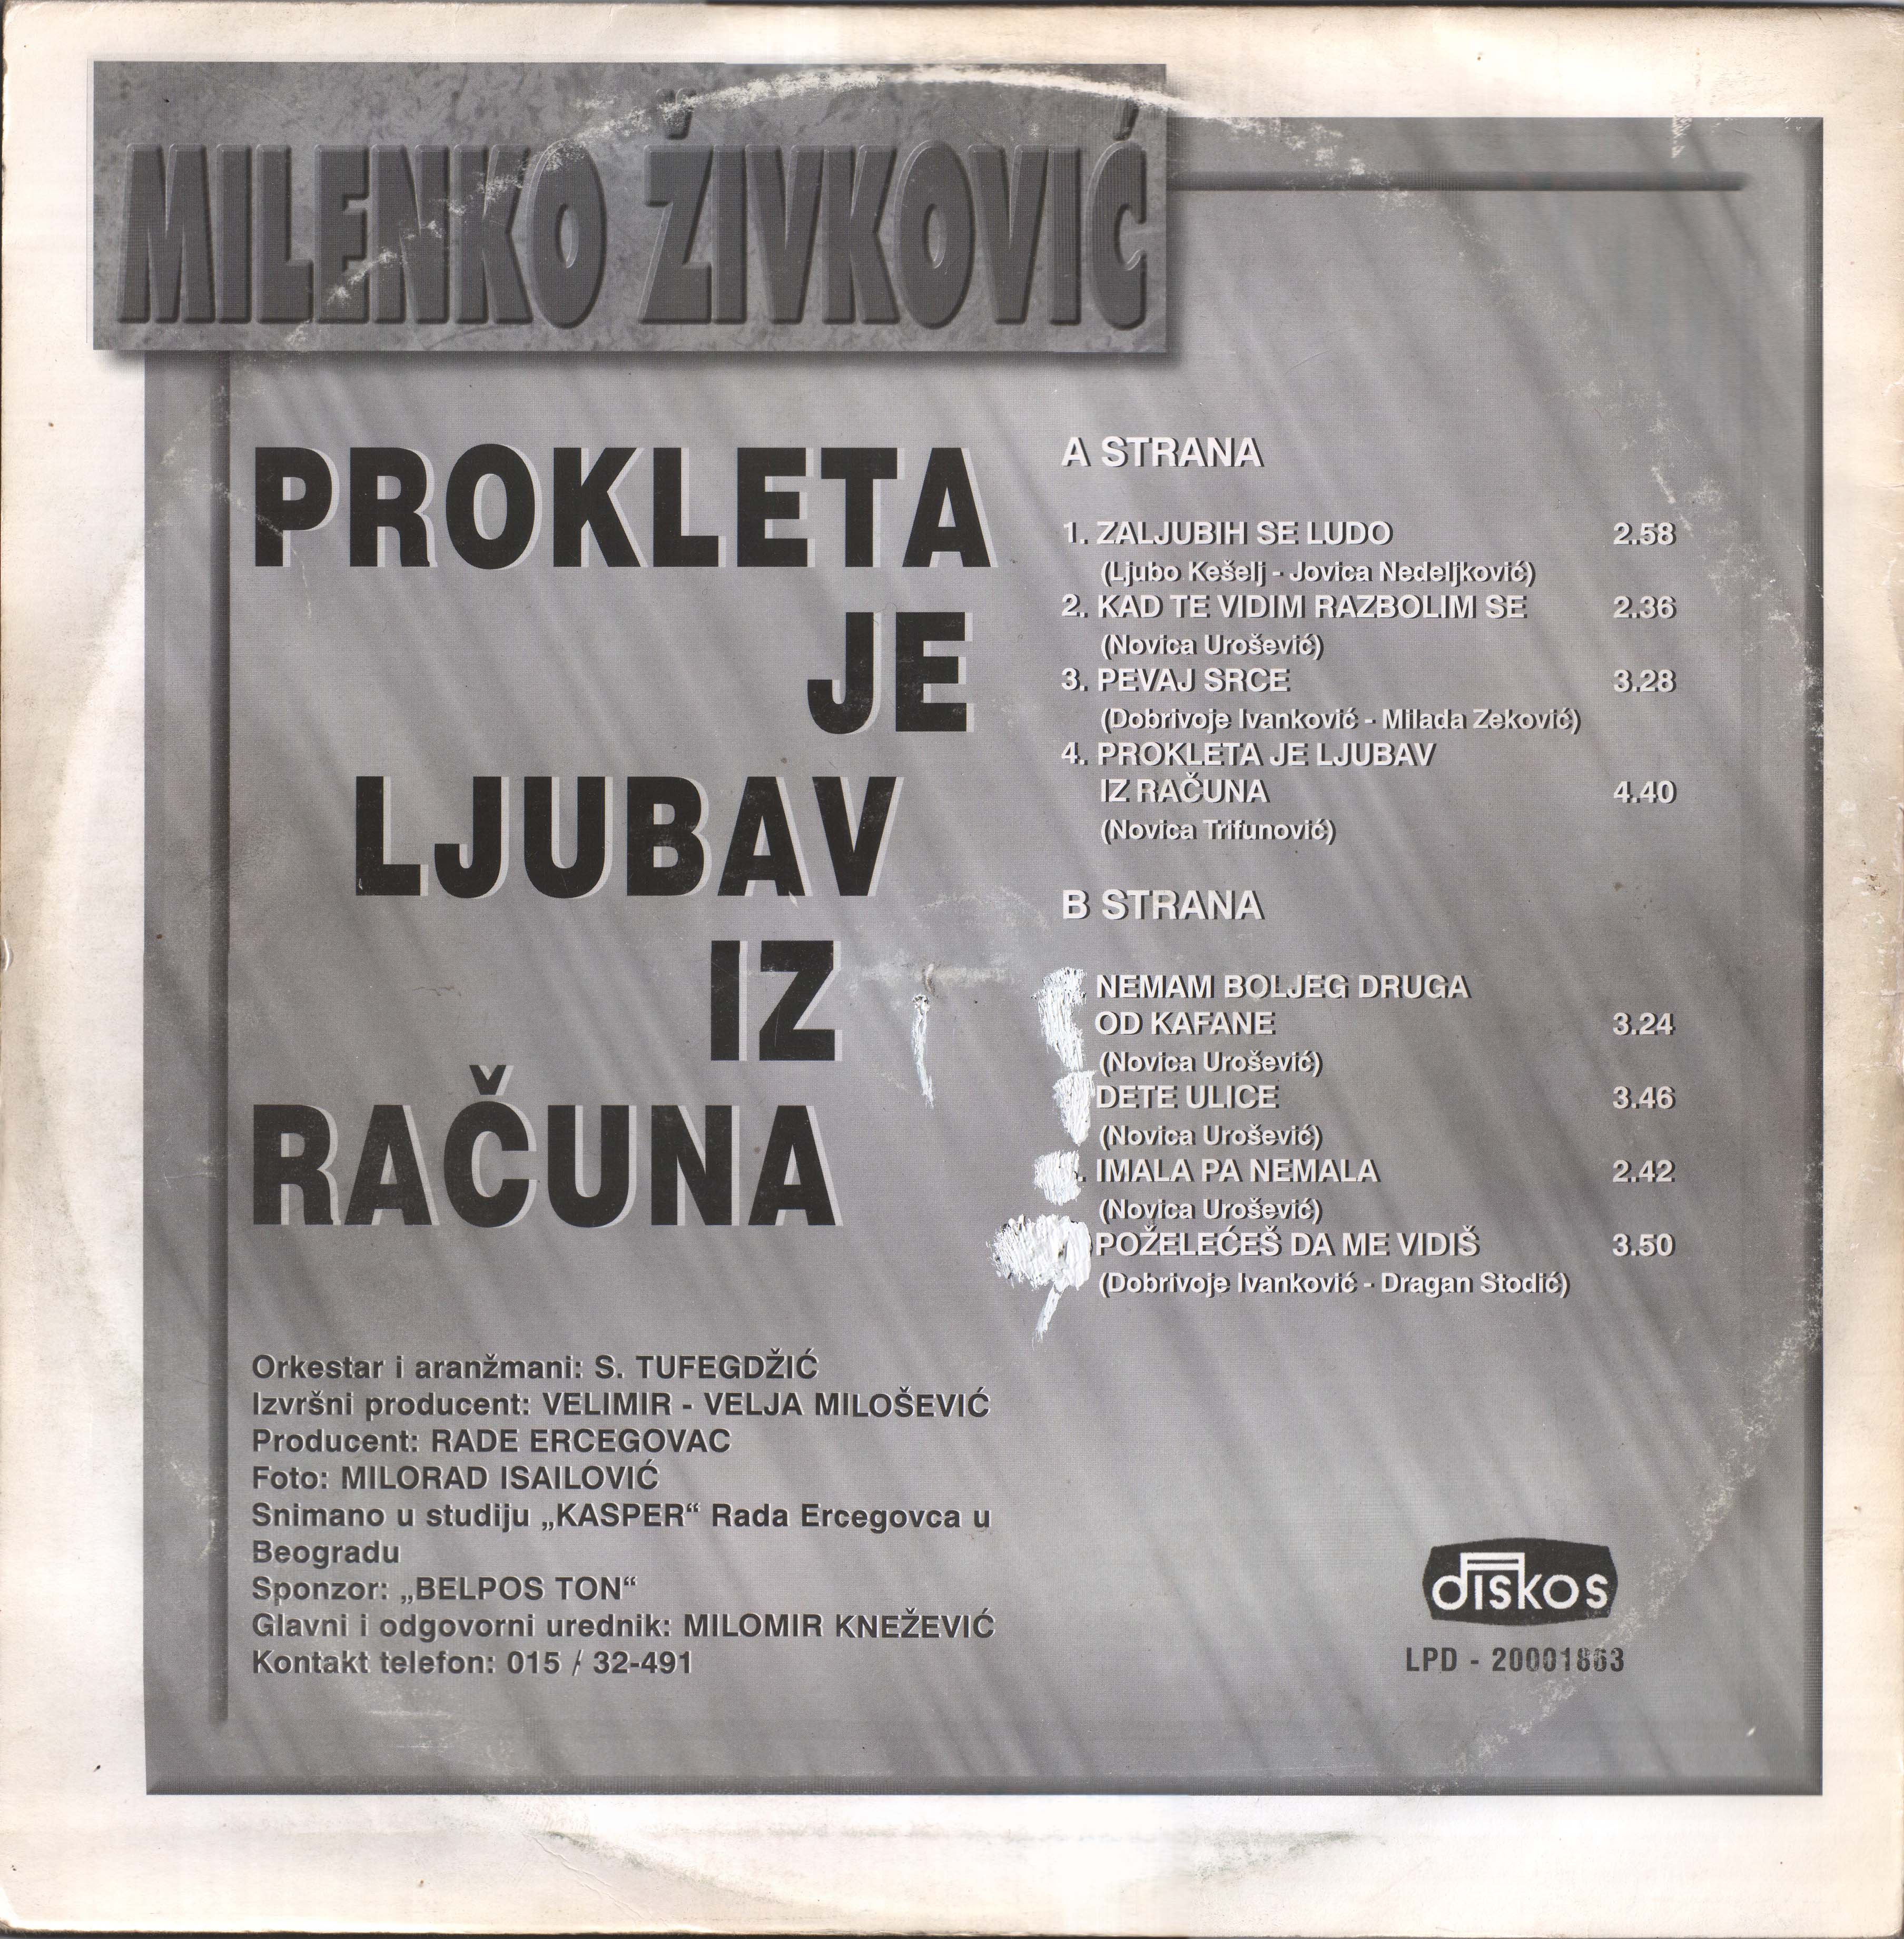 Milenko Zivkovic 1995 Z